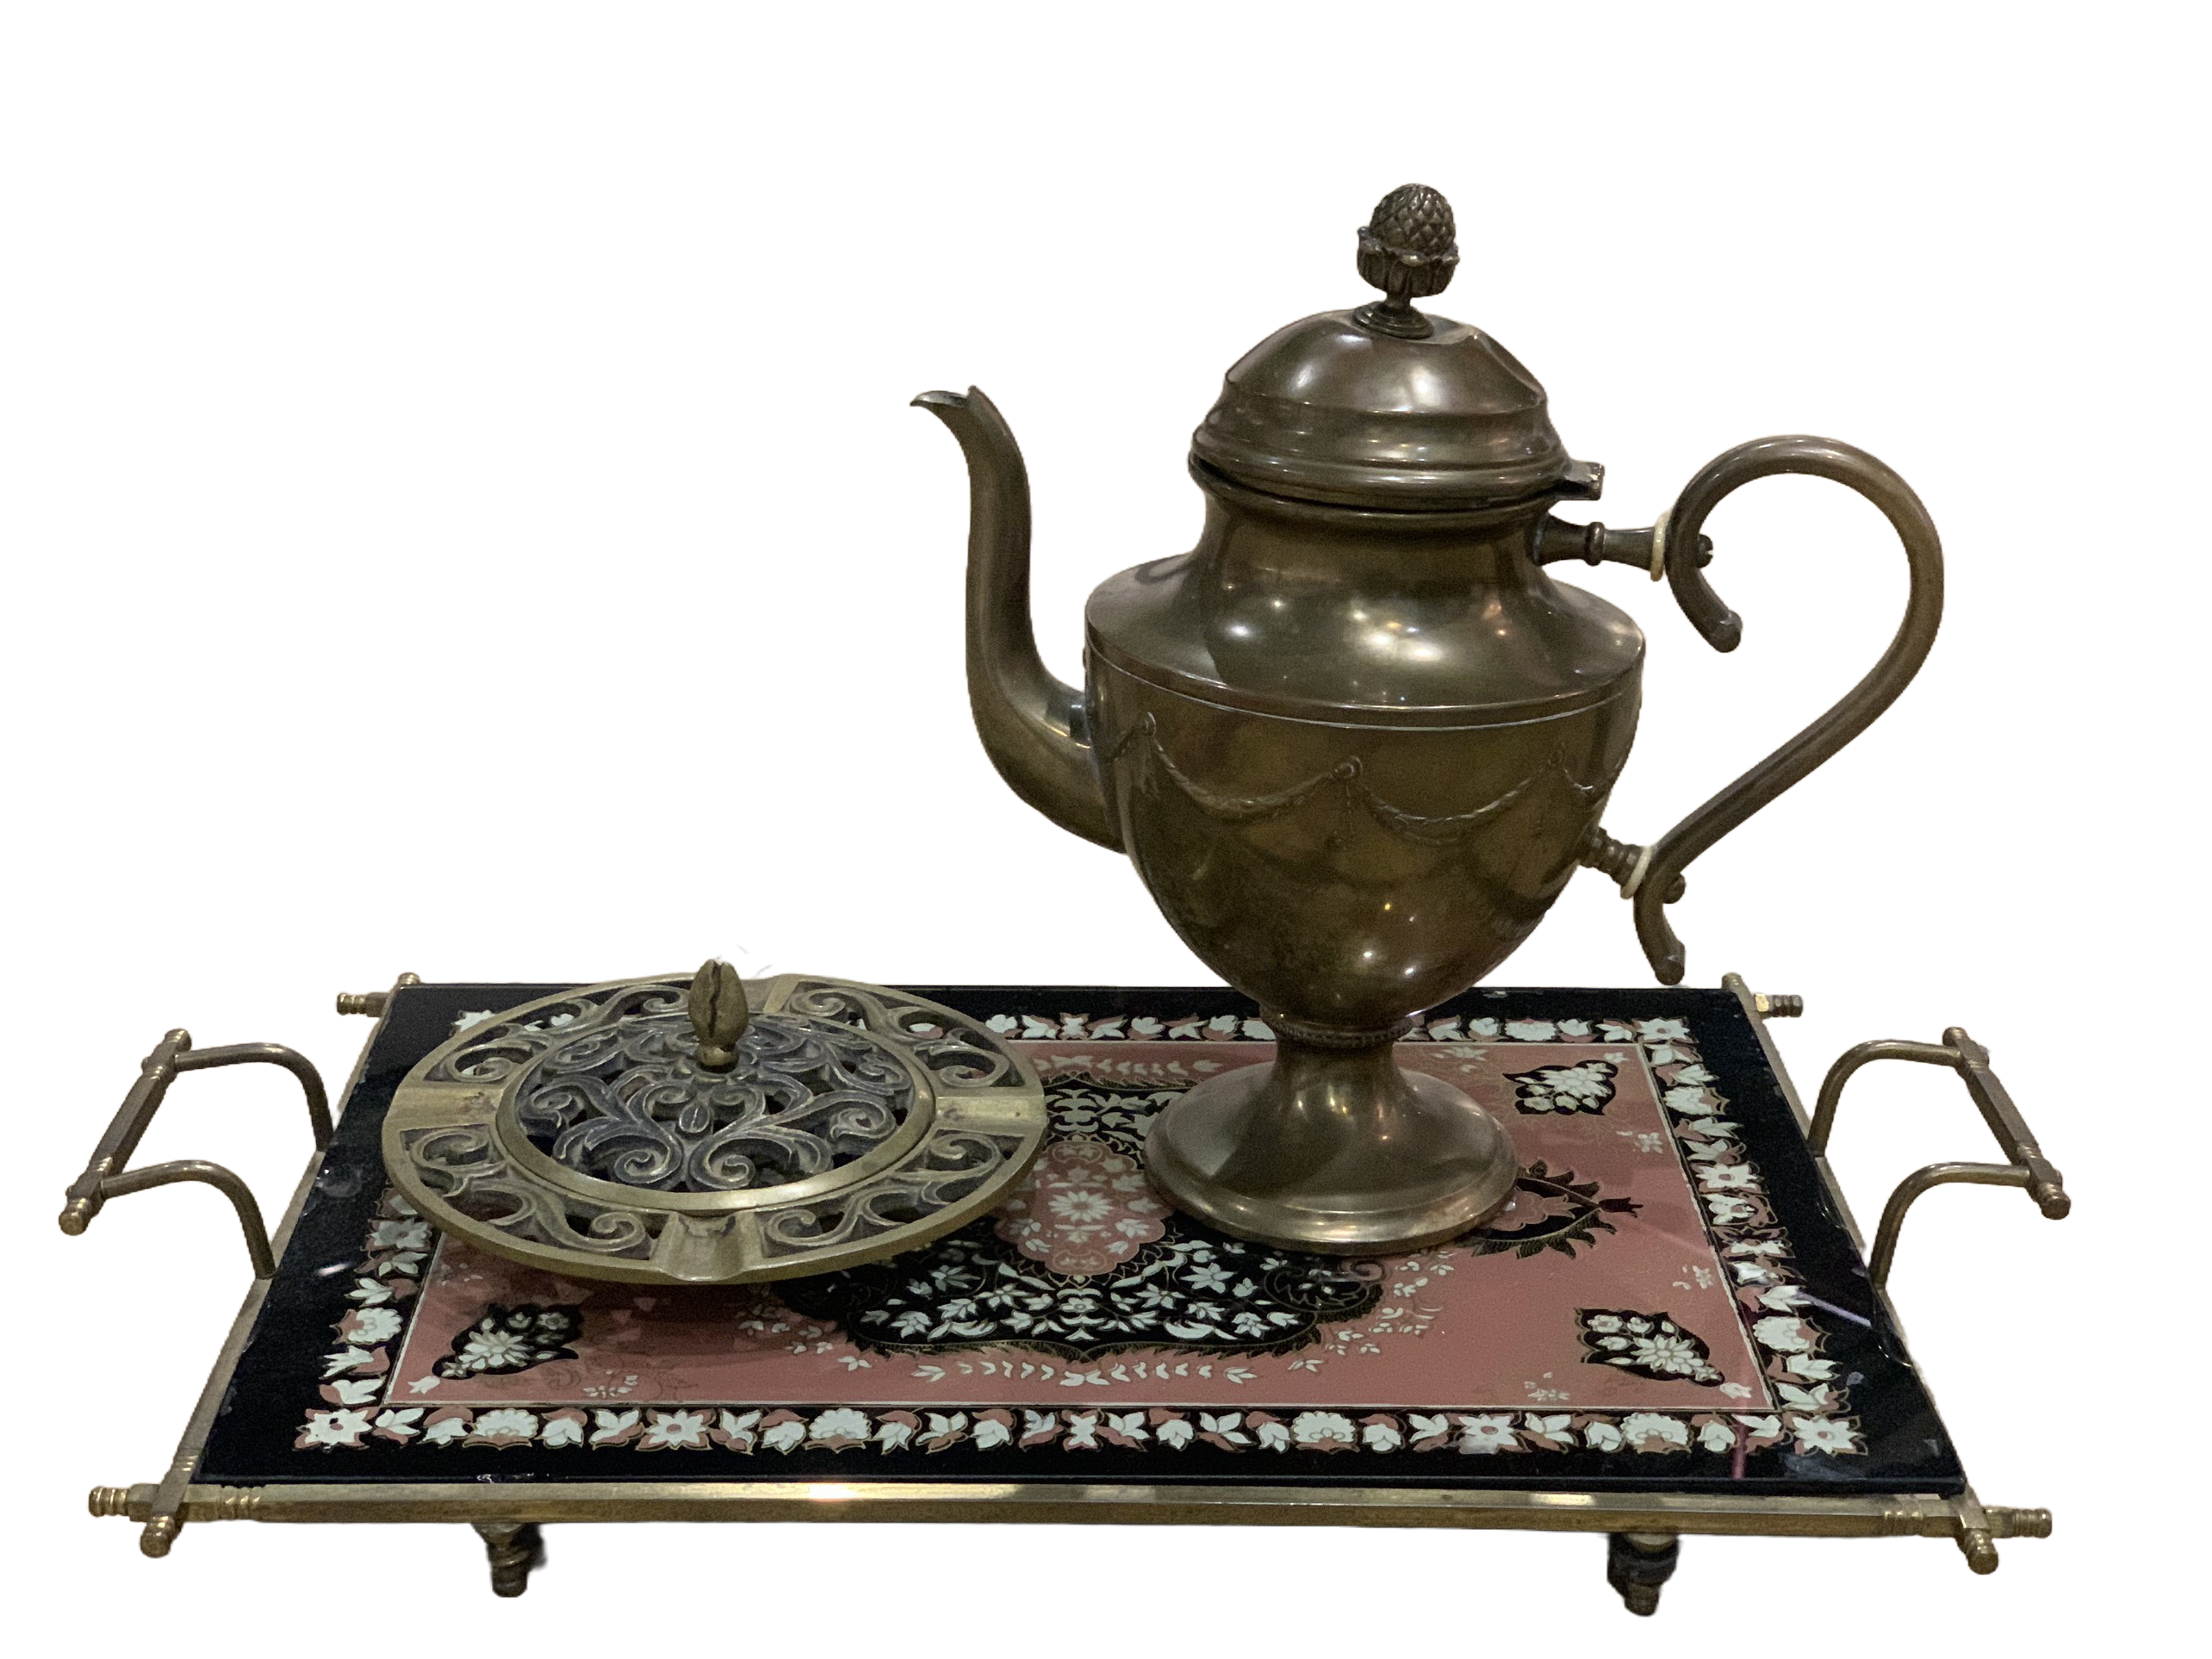 Bộ thưởng lãm cà phê Ottoman/Ottoman’s coffee enjoyment set (TL188)